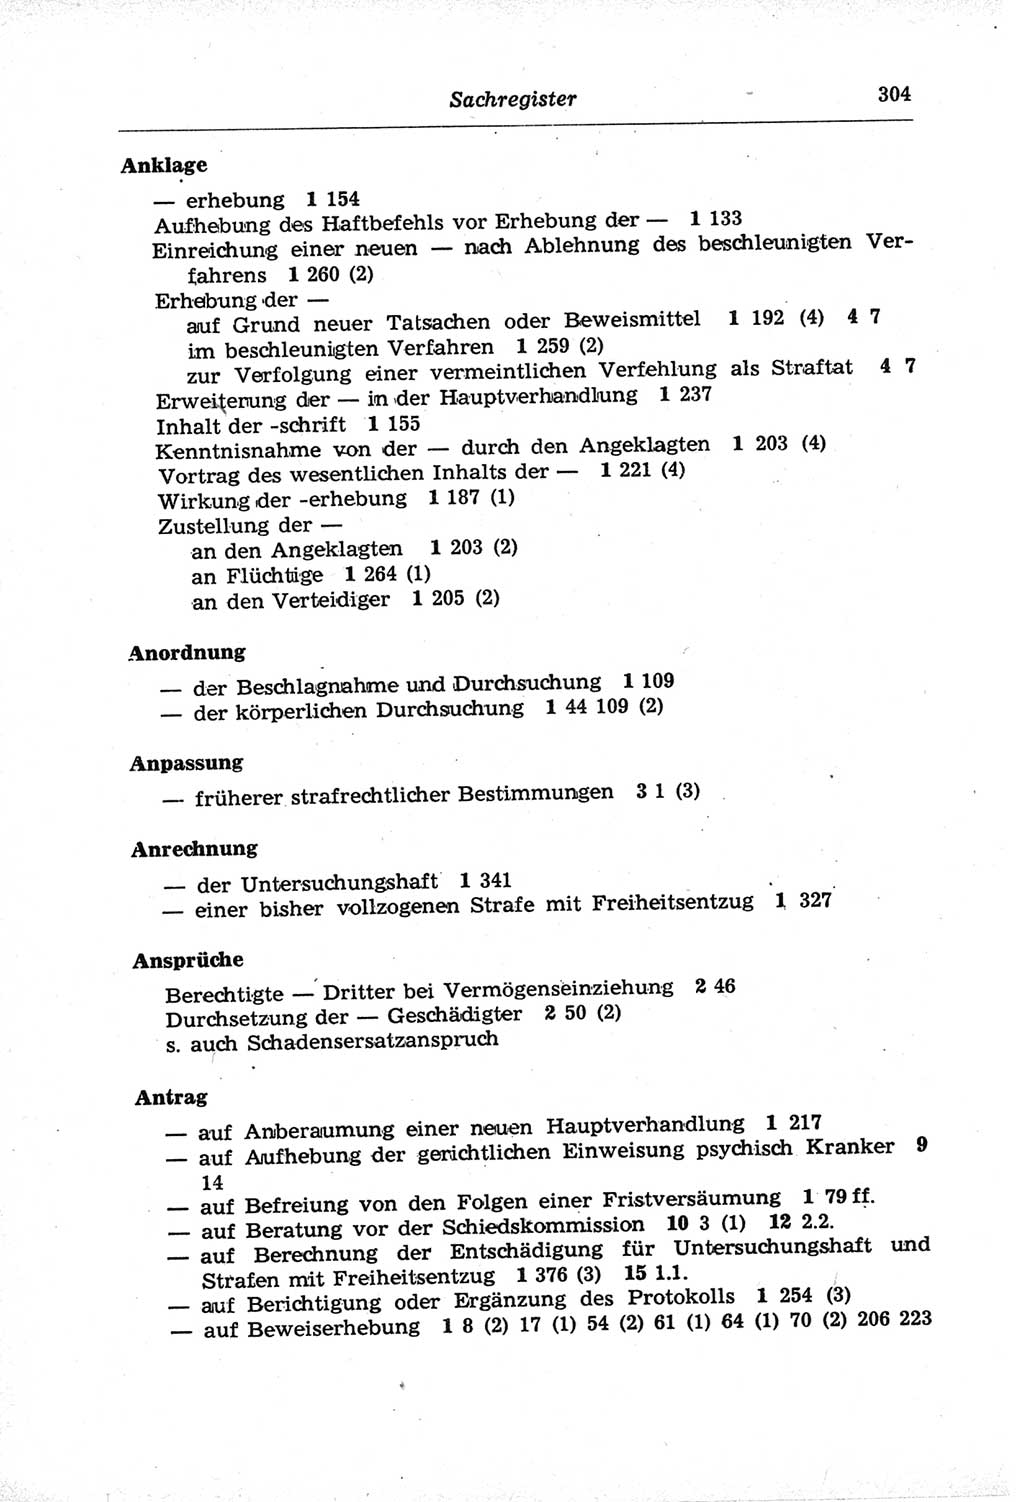 Strafprozeßordnung (StPO) der Deutschen Demokratischen Republik (DDR) und angrenzende Gesetze und Bestimmungen 1968, Seite 304 (StPO Ges. Bstgn. DDR 1968, S. 304)